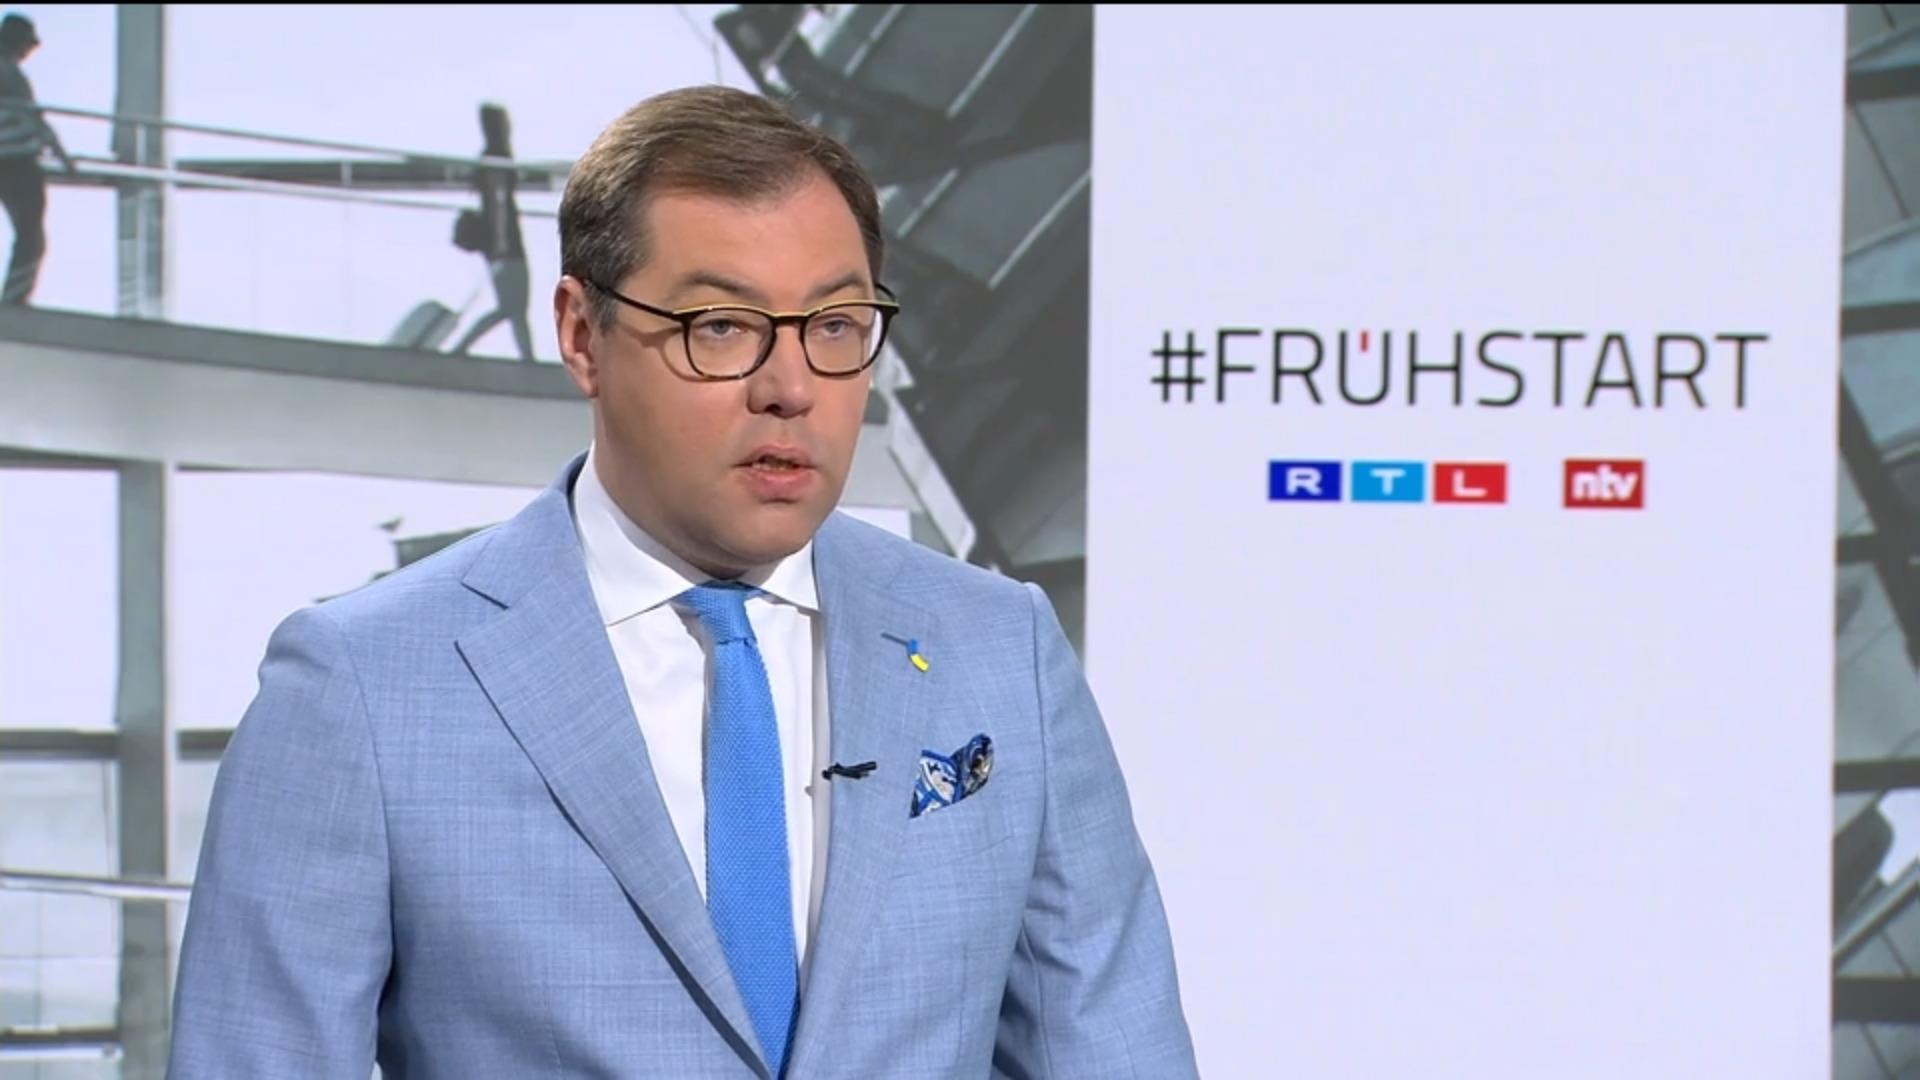 Ukrainischer Botschafter: "Wir brauchen die Jets" RTL/ntv Frühstart